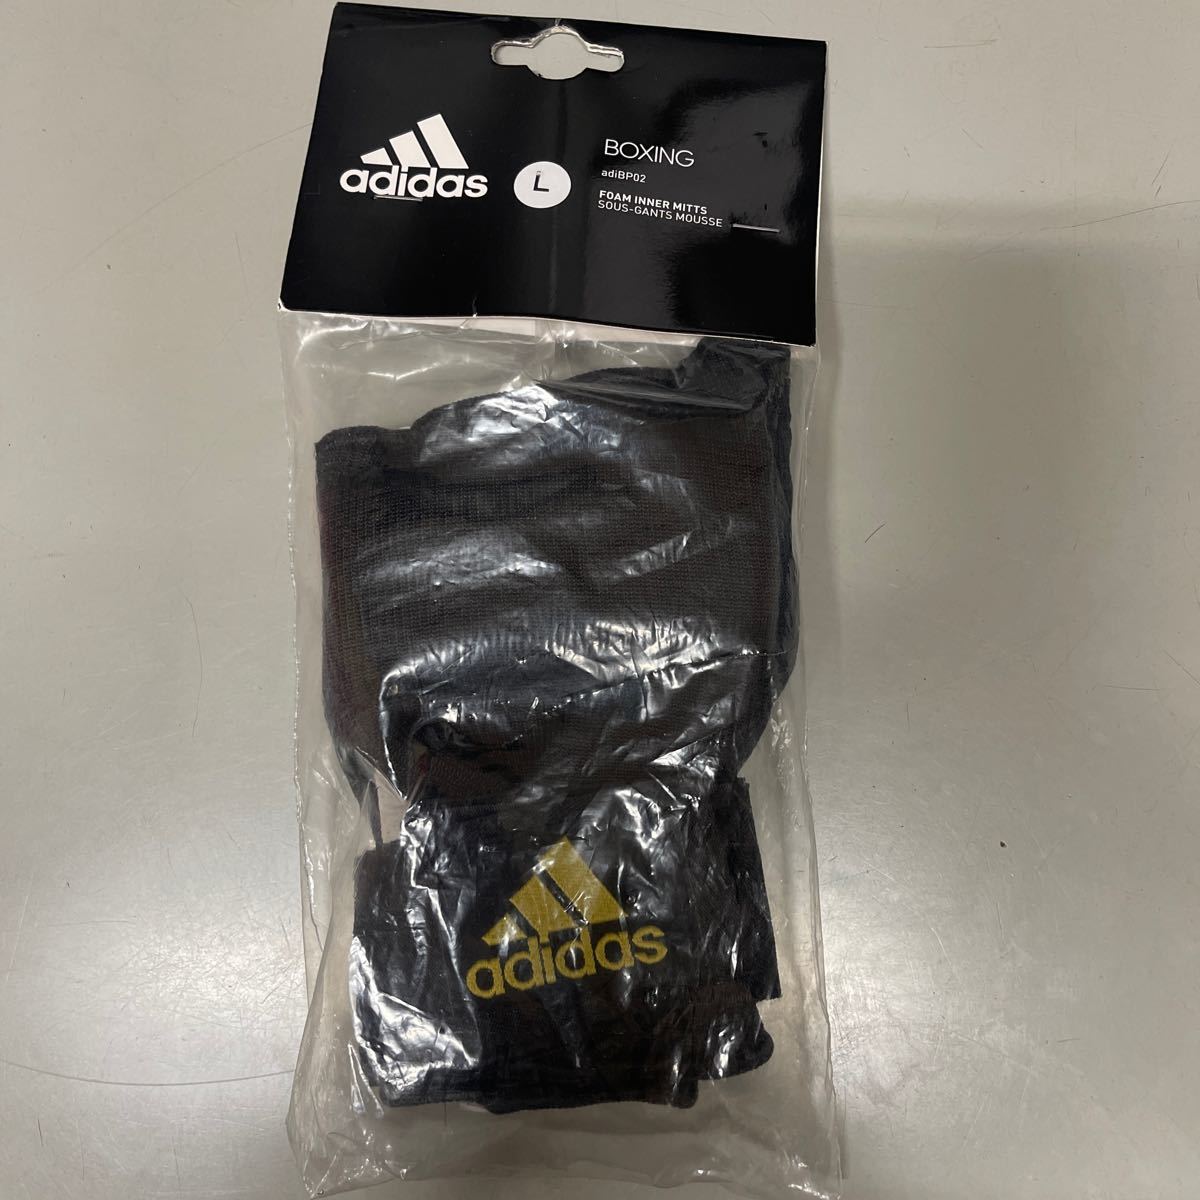  Adidas combat спорт adidas combat sports бокс перчатка adiBP02 черный Gold не использовался L размер BOXING